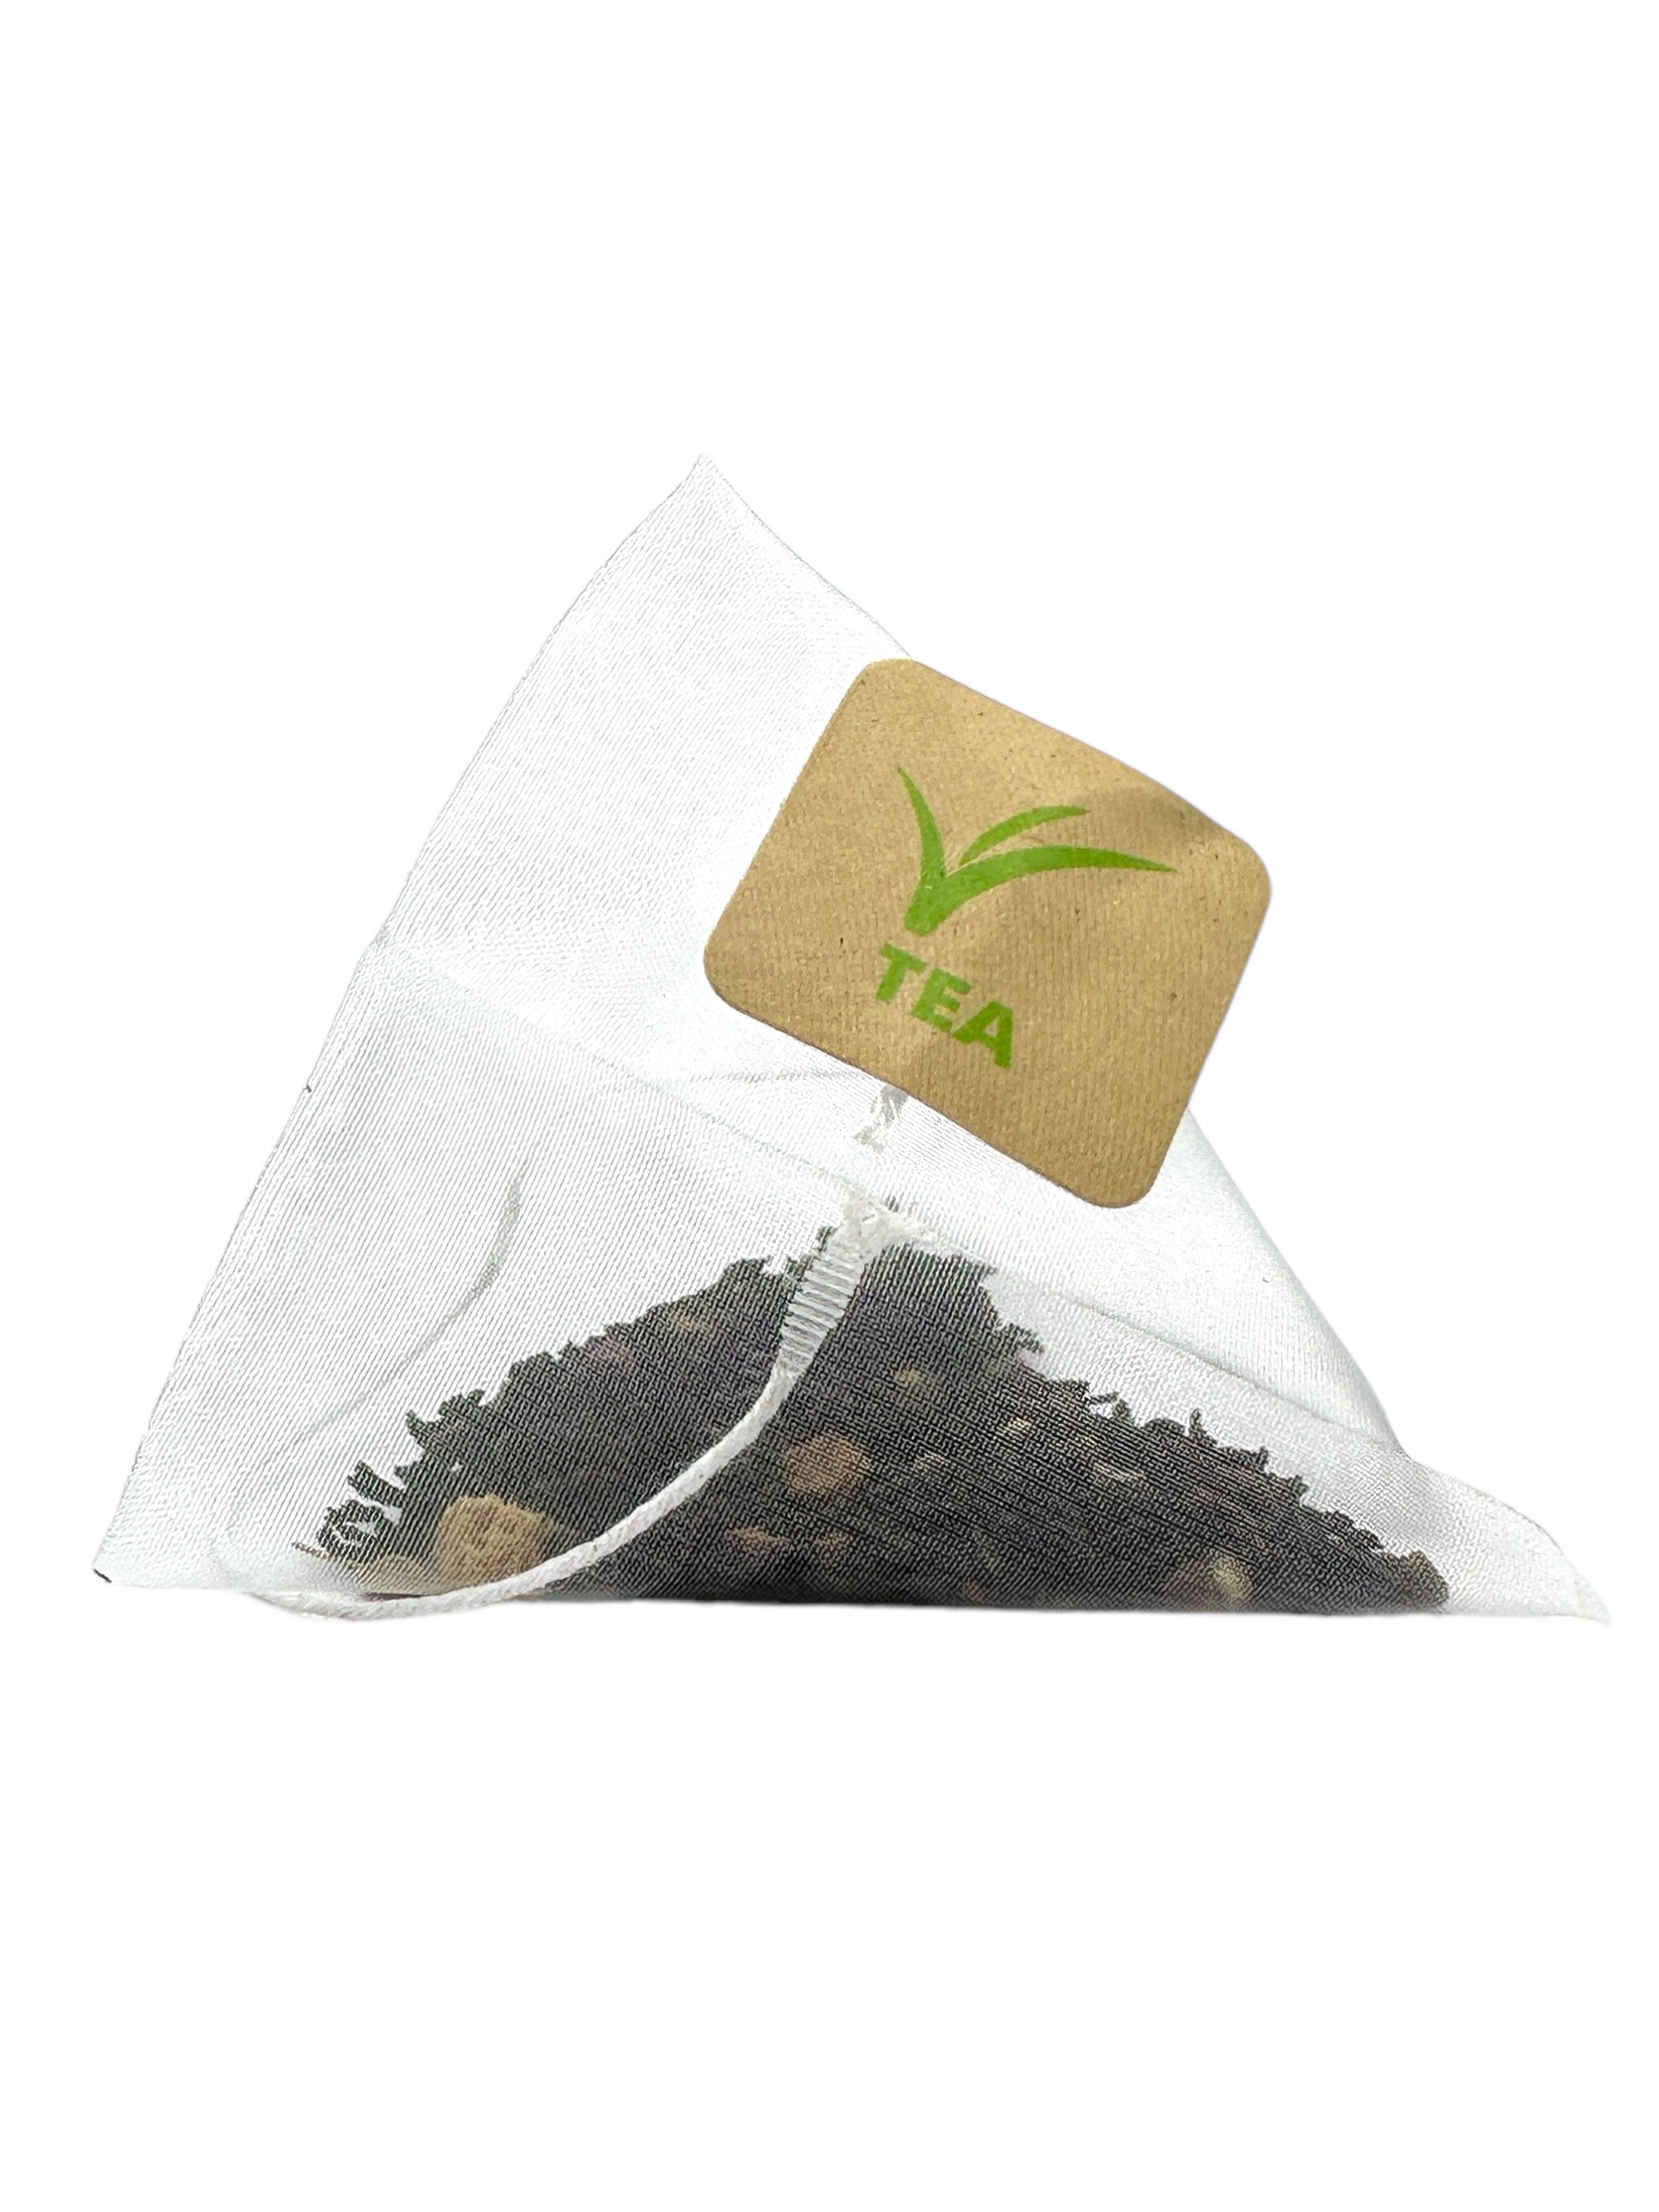 Masala Chai X-Press Tea® Pyramid Teabags 